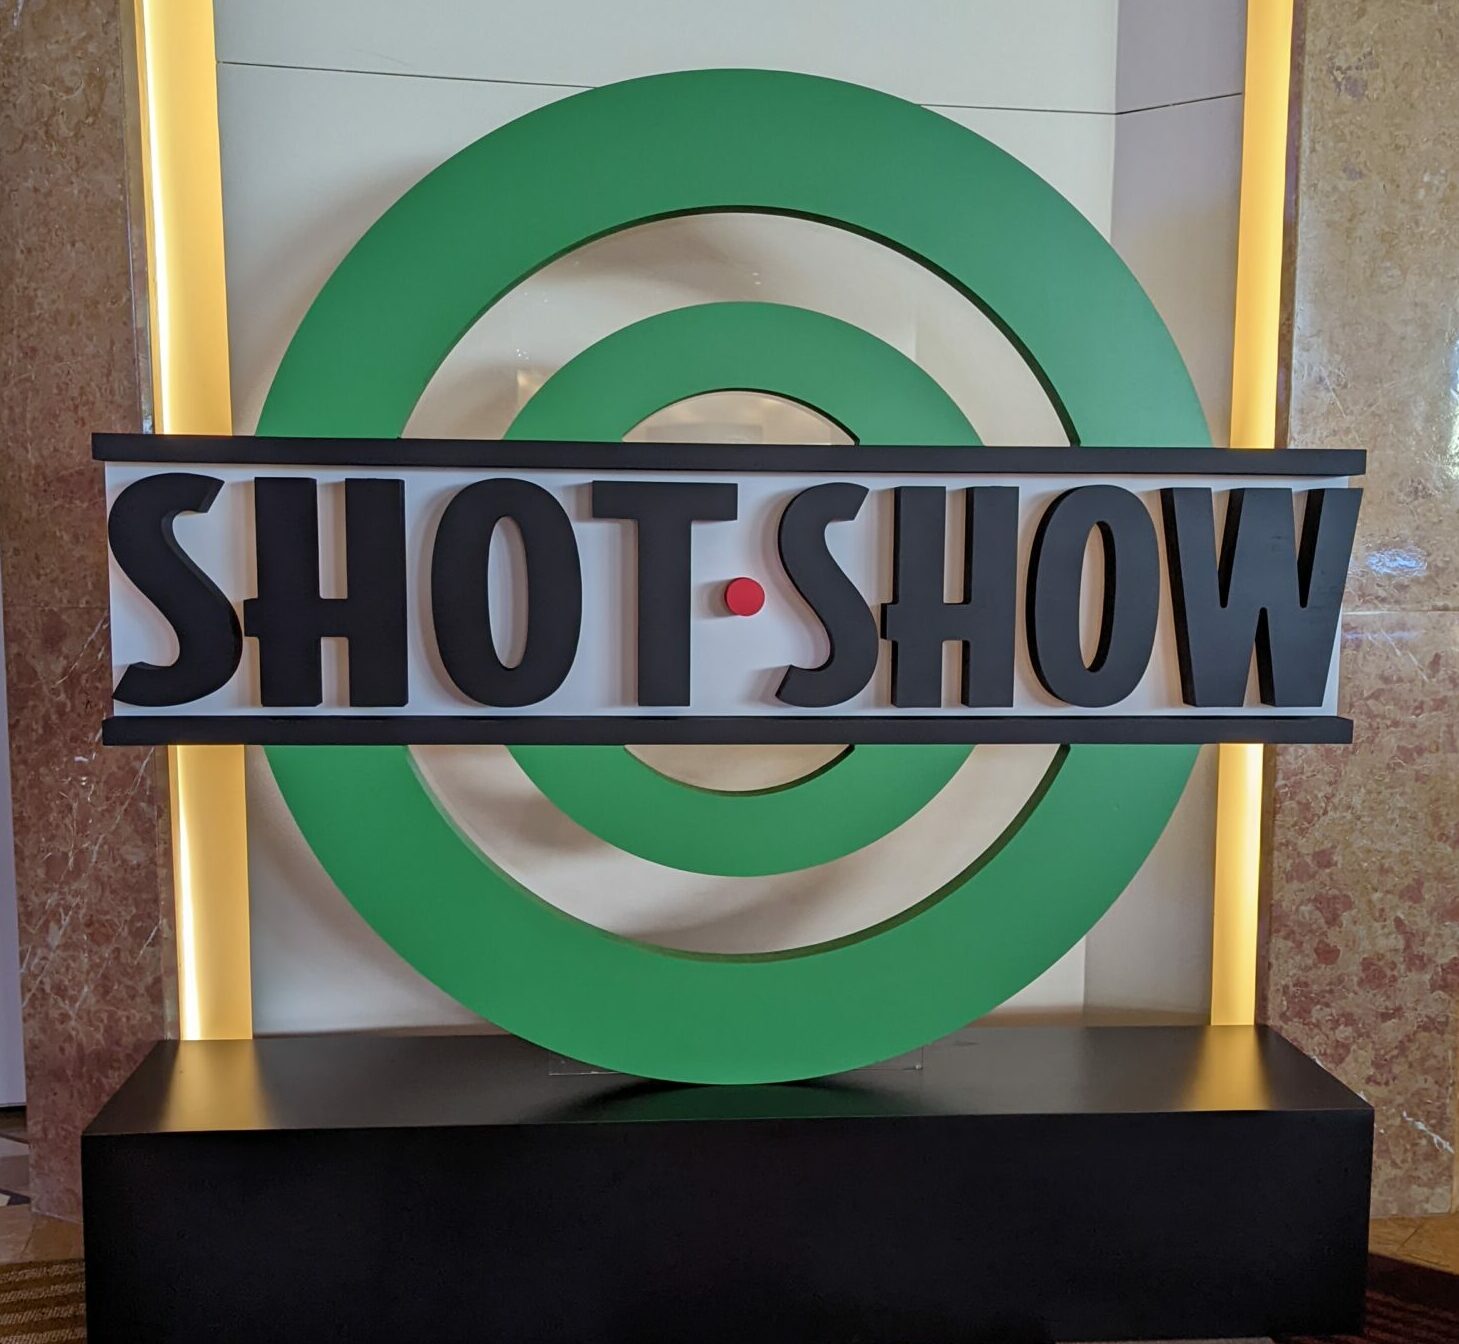 APAGOA at SHOT Show 2022